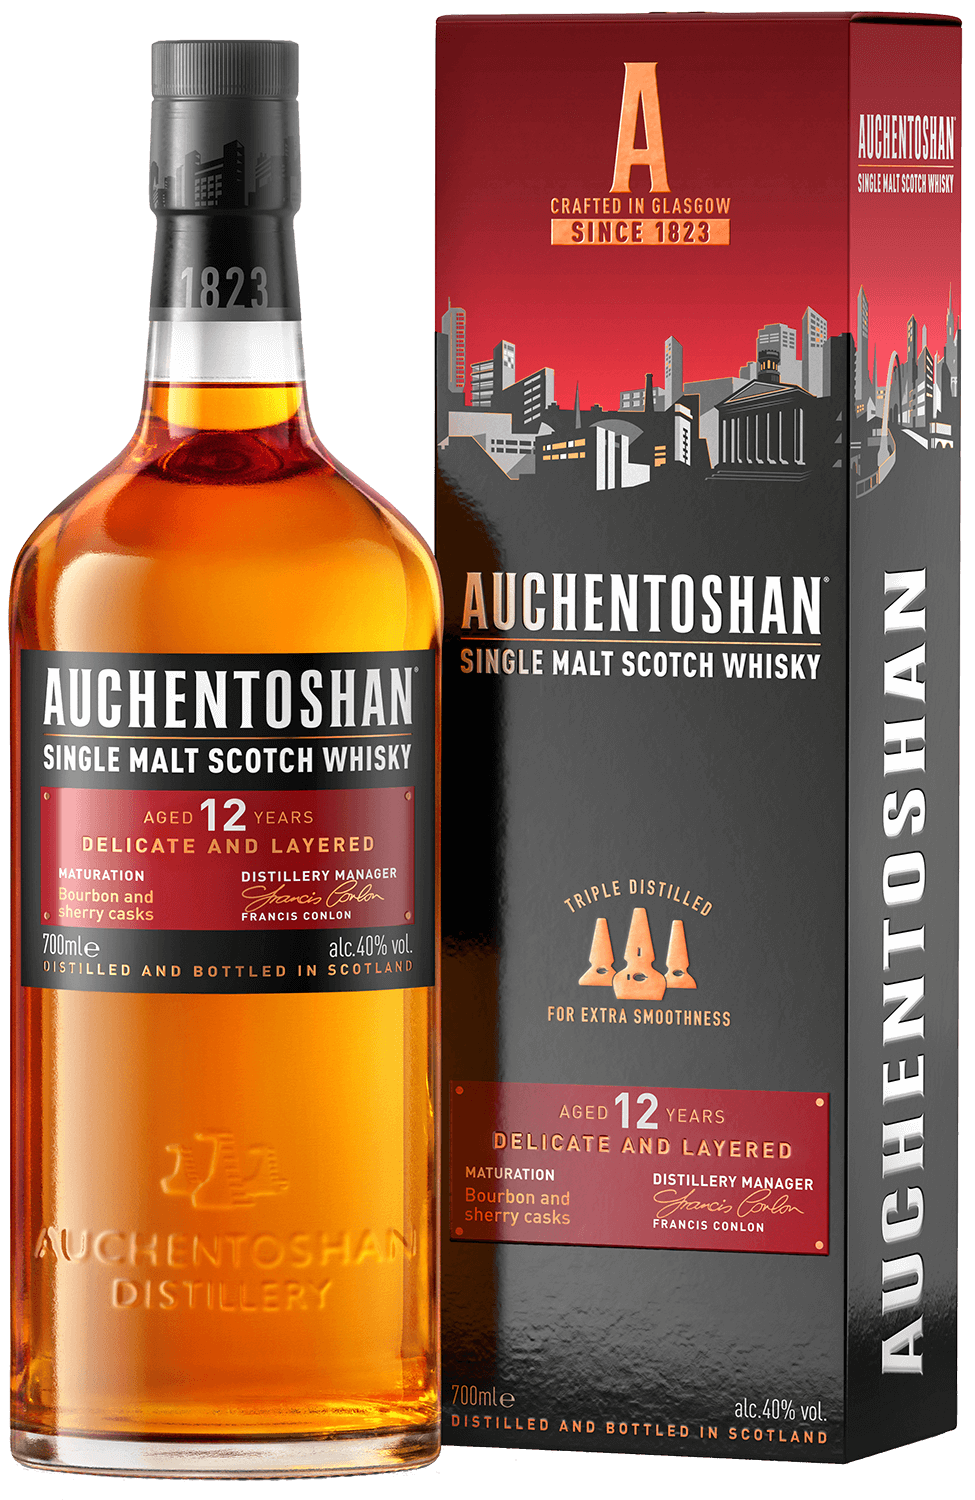 Auchentoshan Single Malt Scotch Whisky 12 y.o. (gift box)